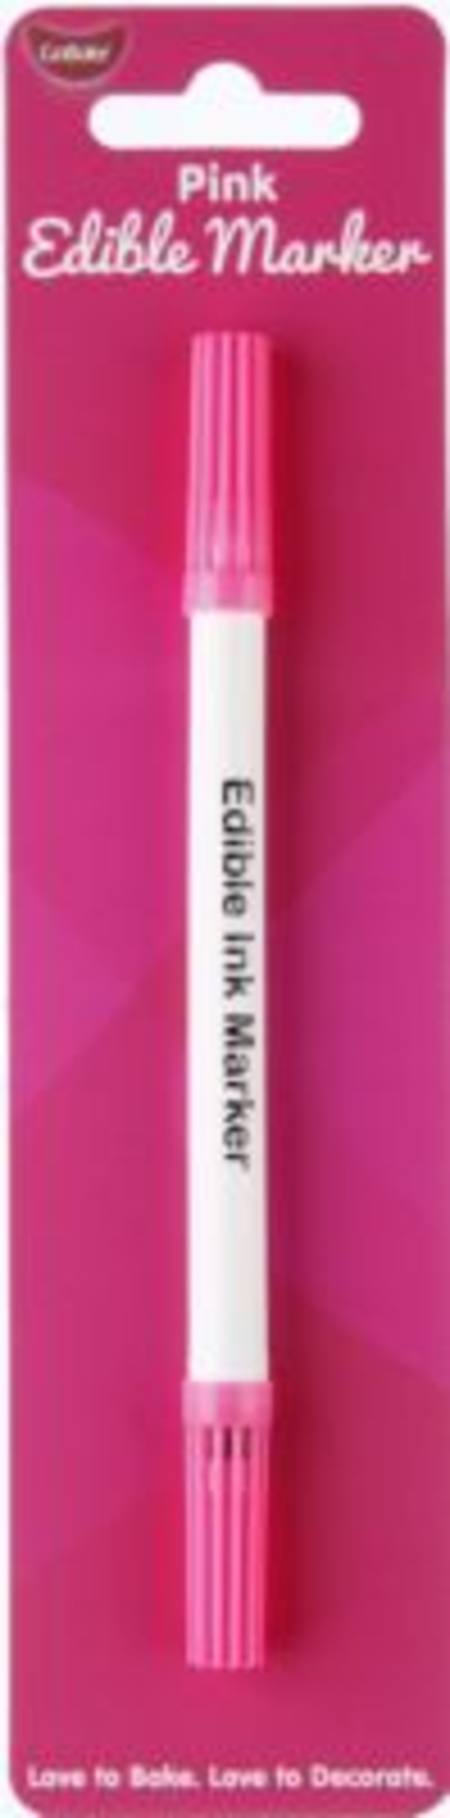 Buy Edible Marker Pen Pink in NZ. 